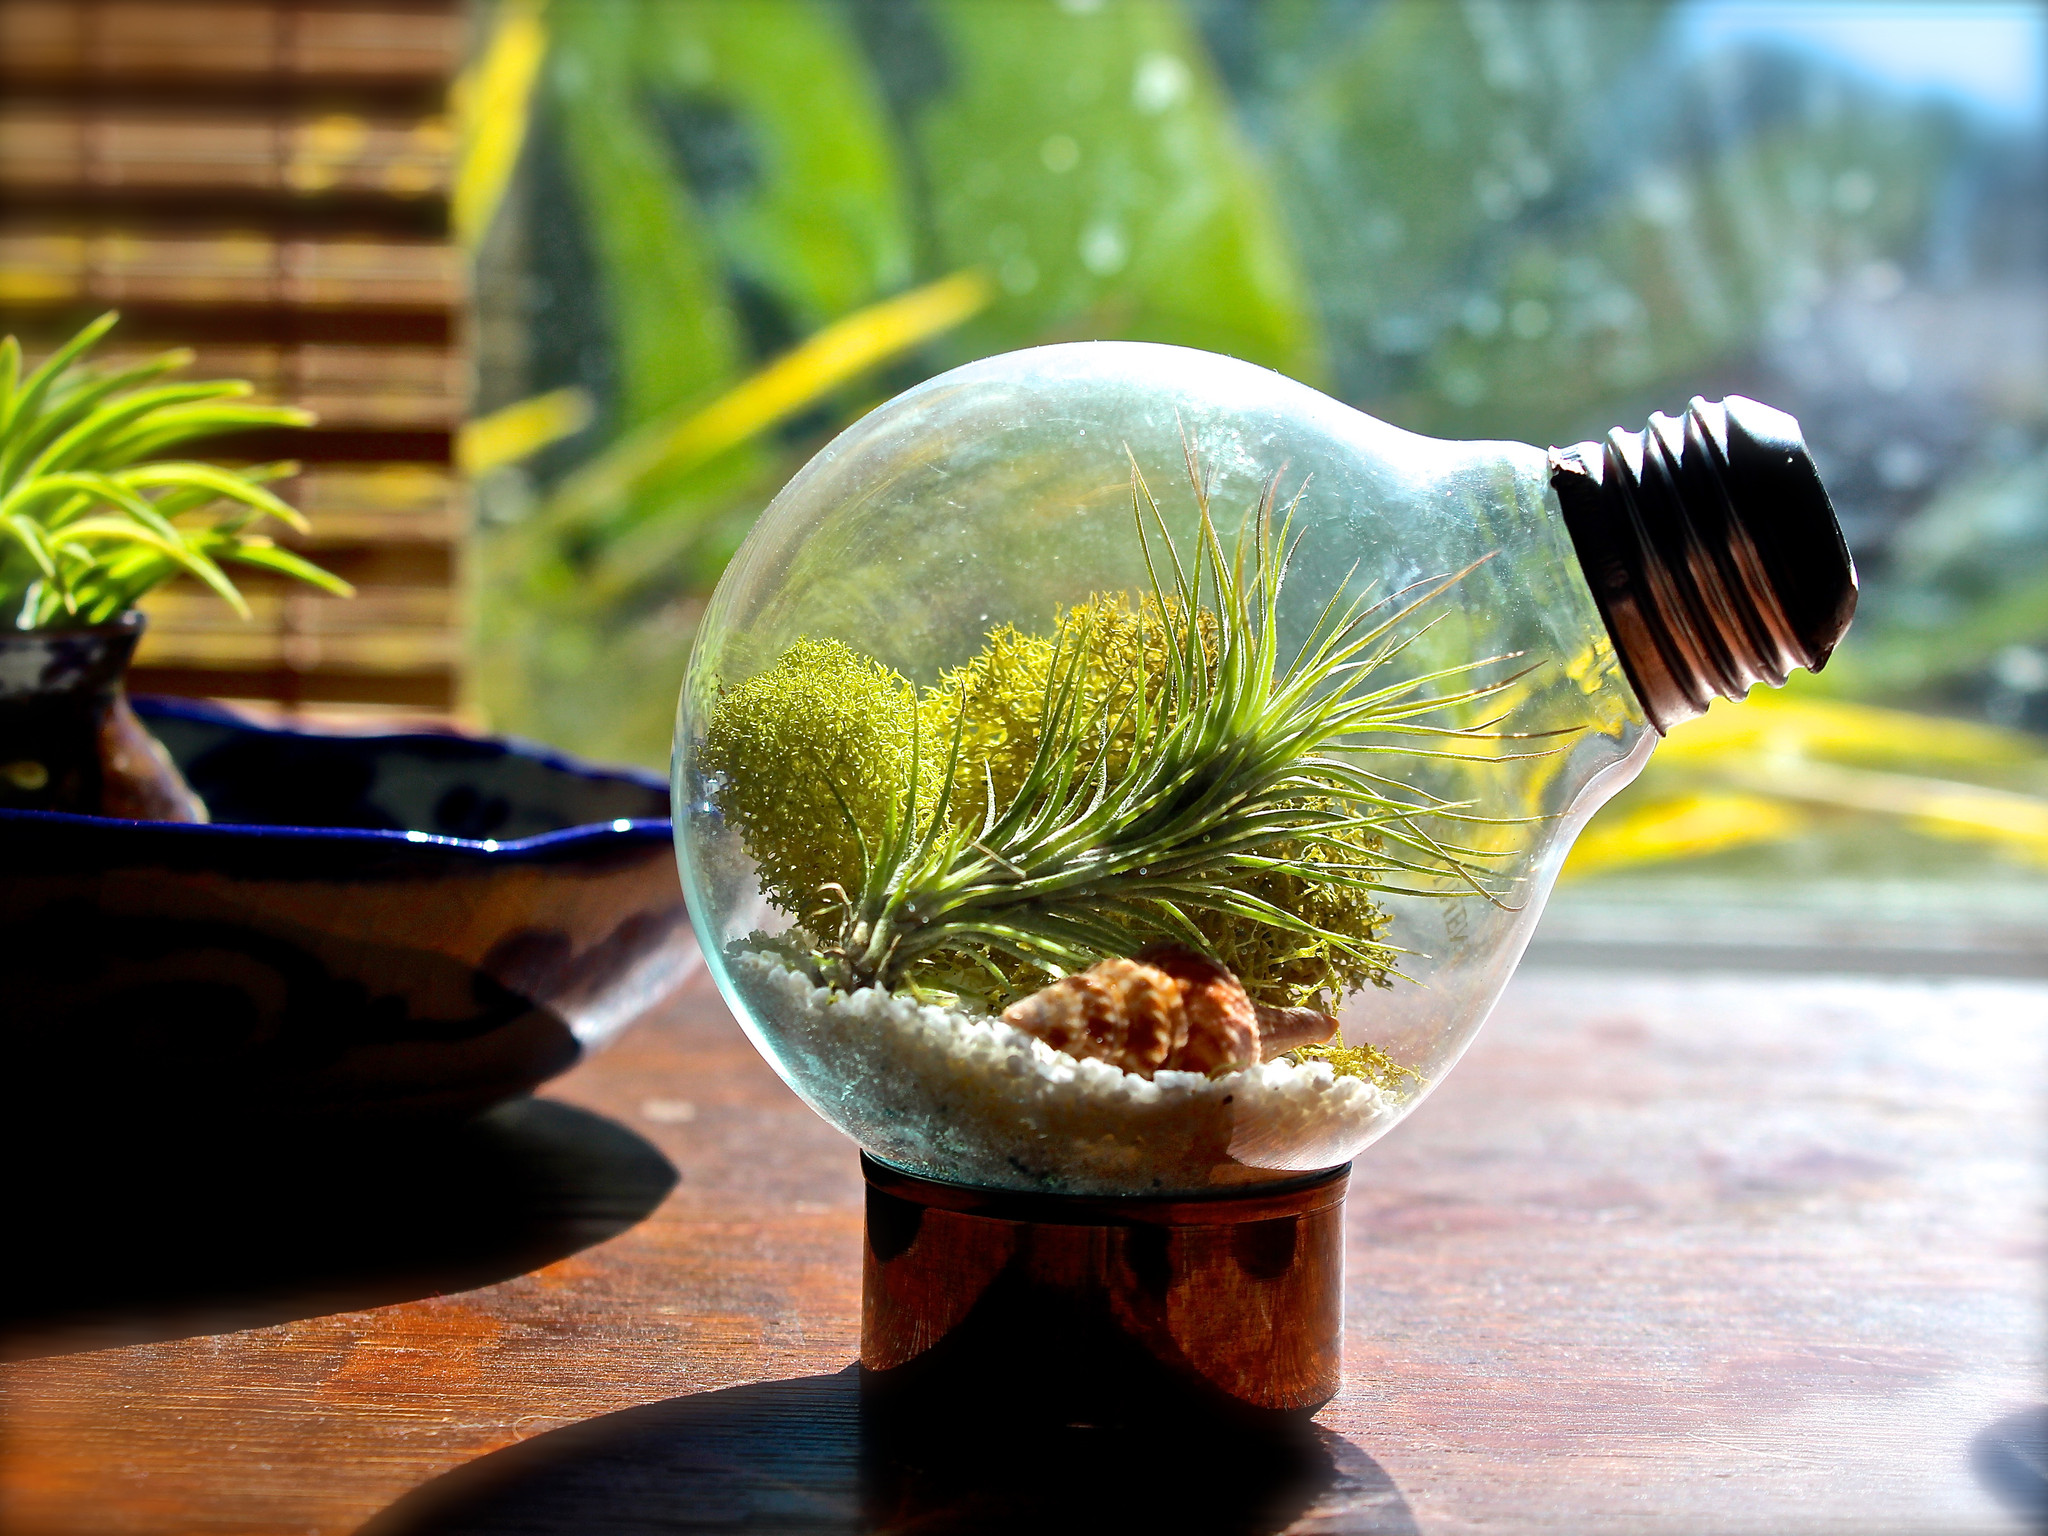 Light-bulb-air-plant-terrarium-2